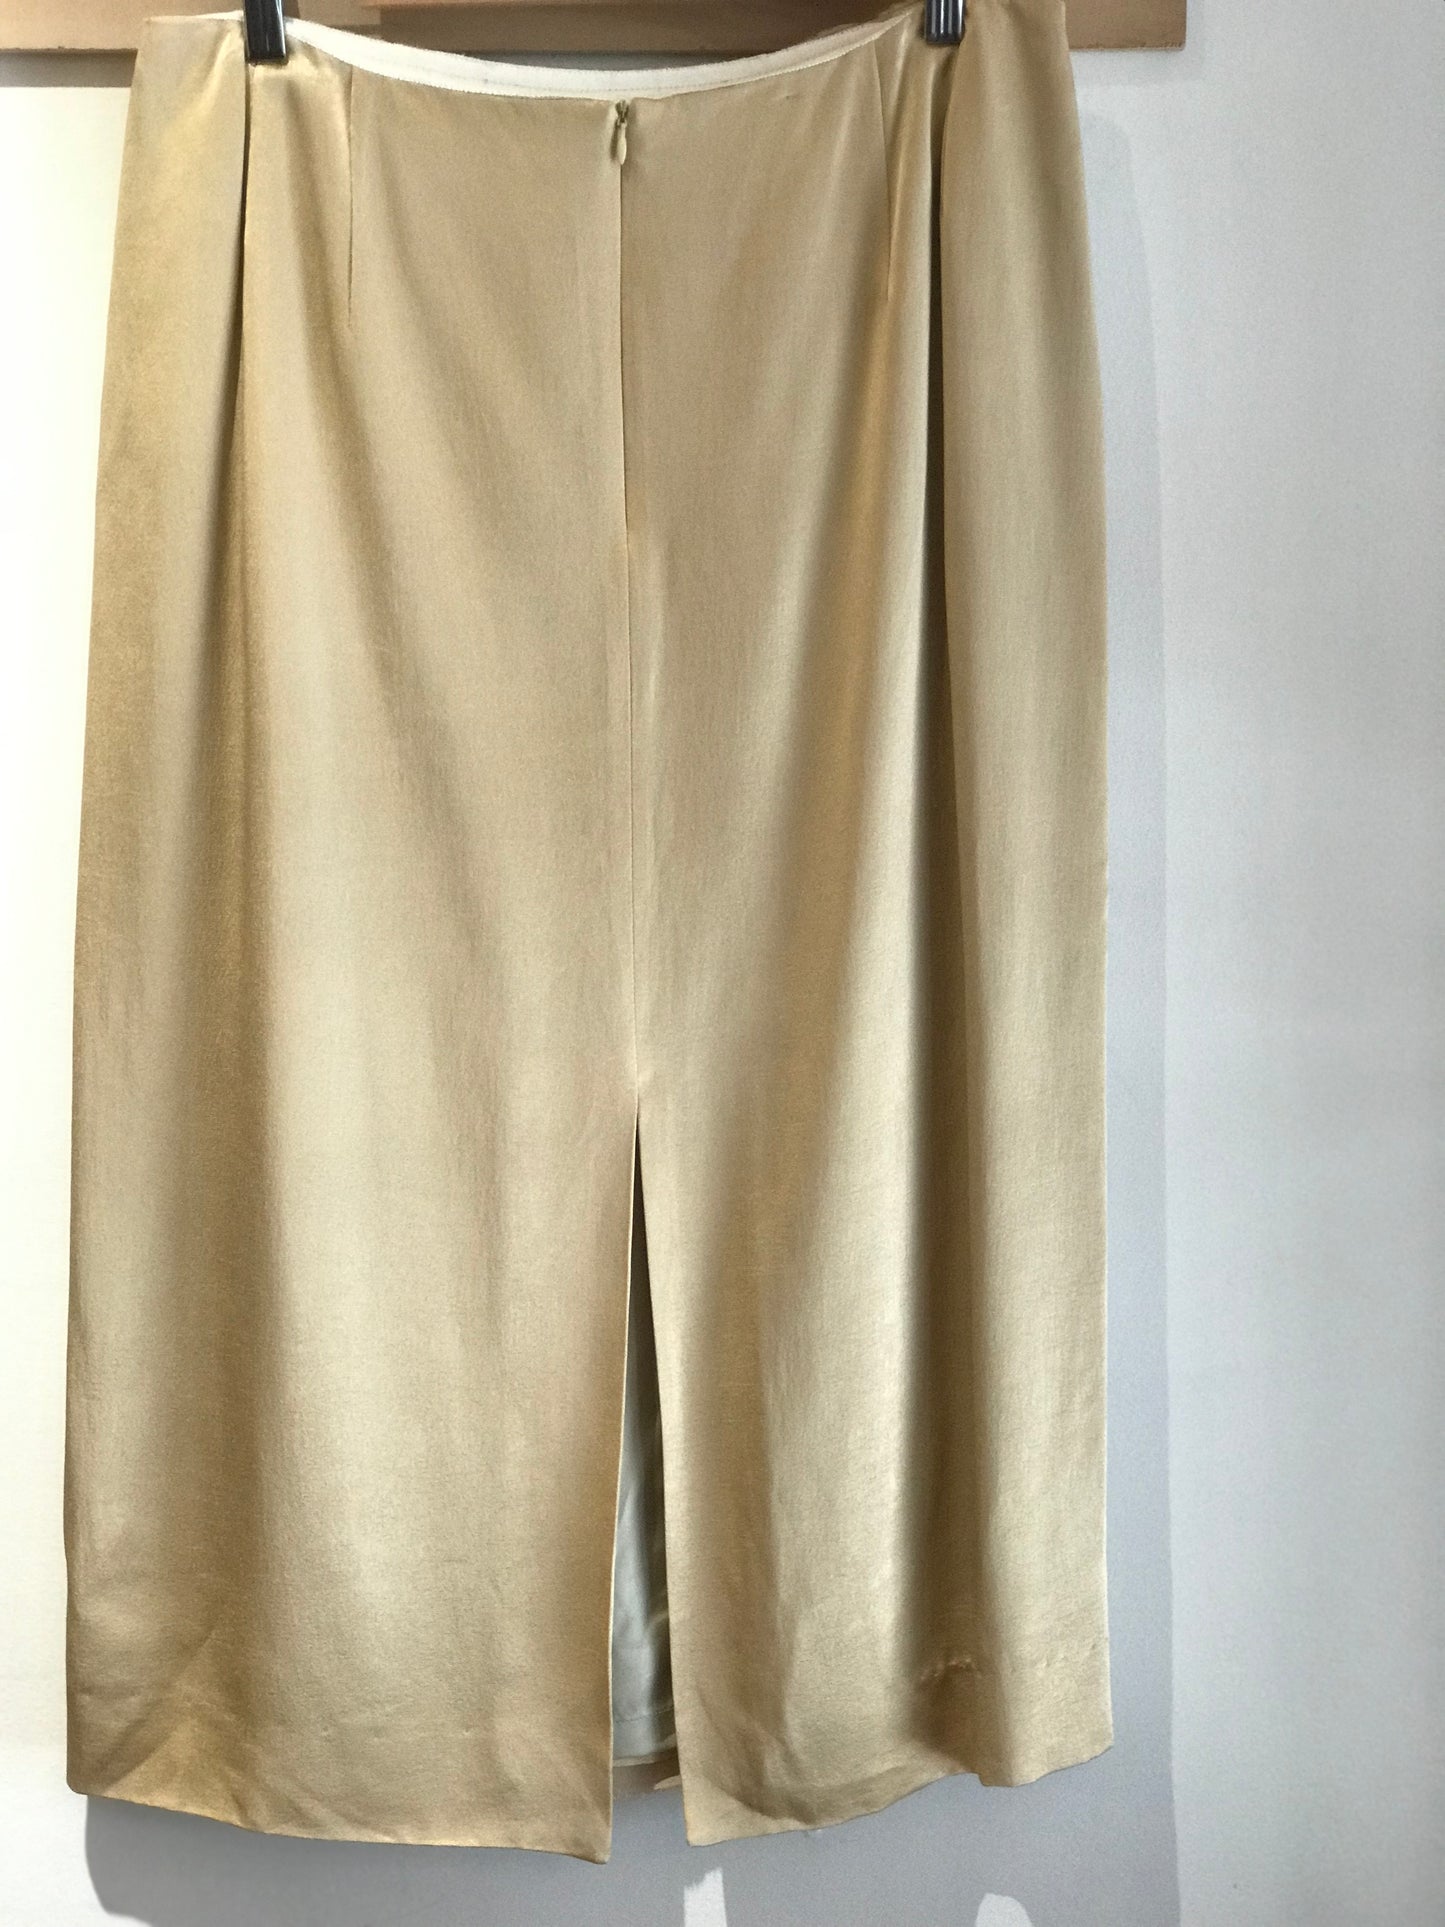 Dries Van Notten Gold Skirt